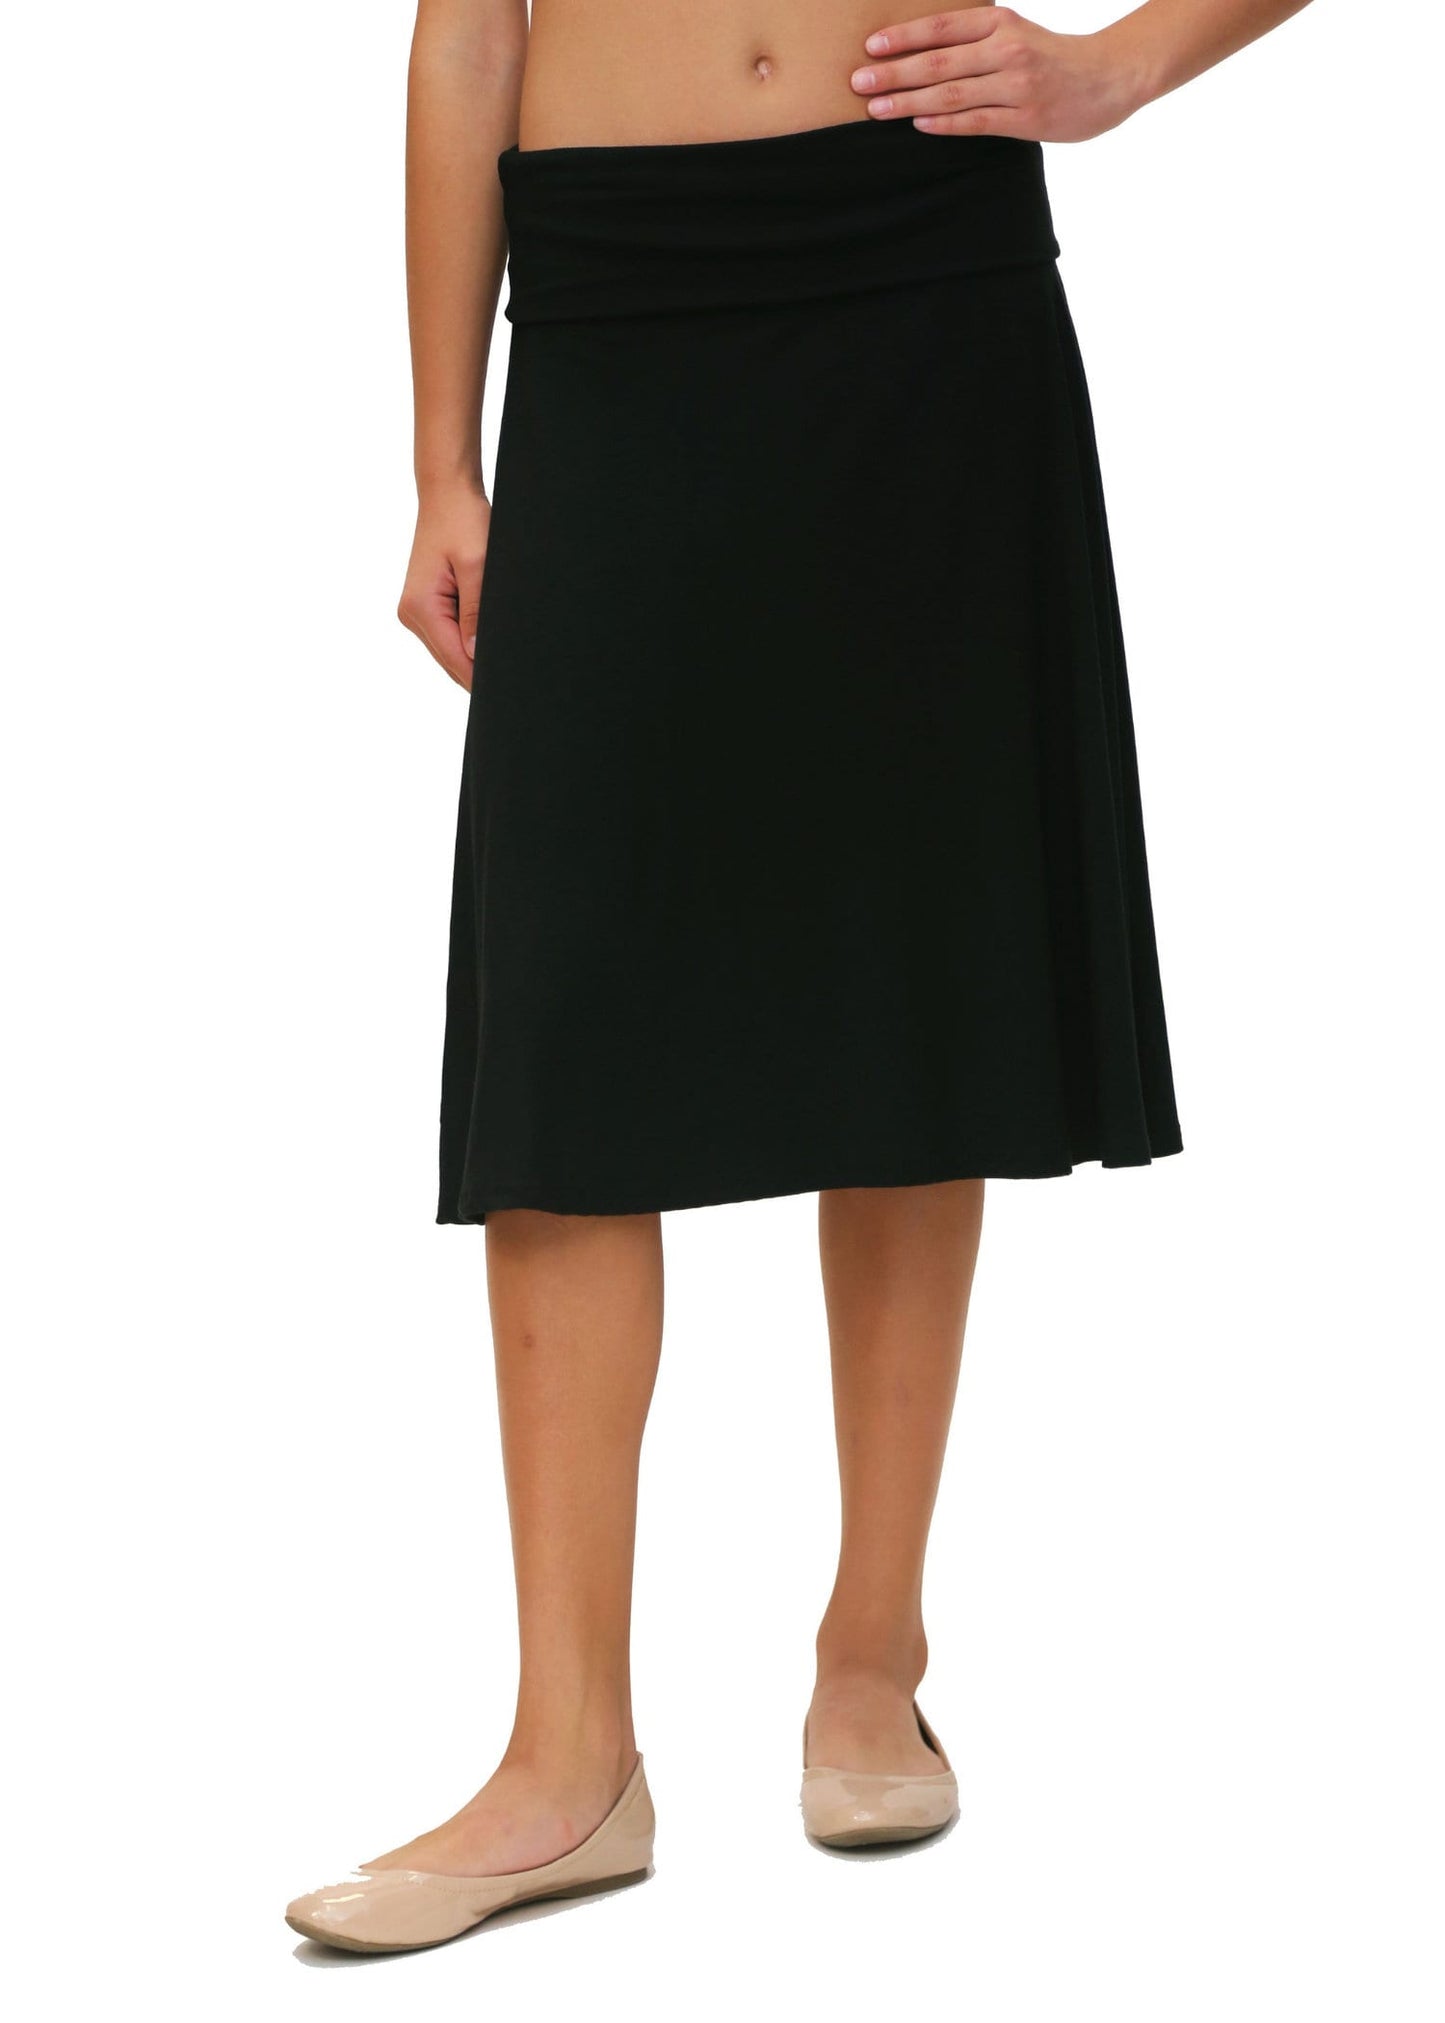 Black School Skirt, Longer School Uniform, Elementary School Skirt, Knee Length Skirt for School, High School Skirt, Jr High Skirt